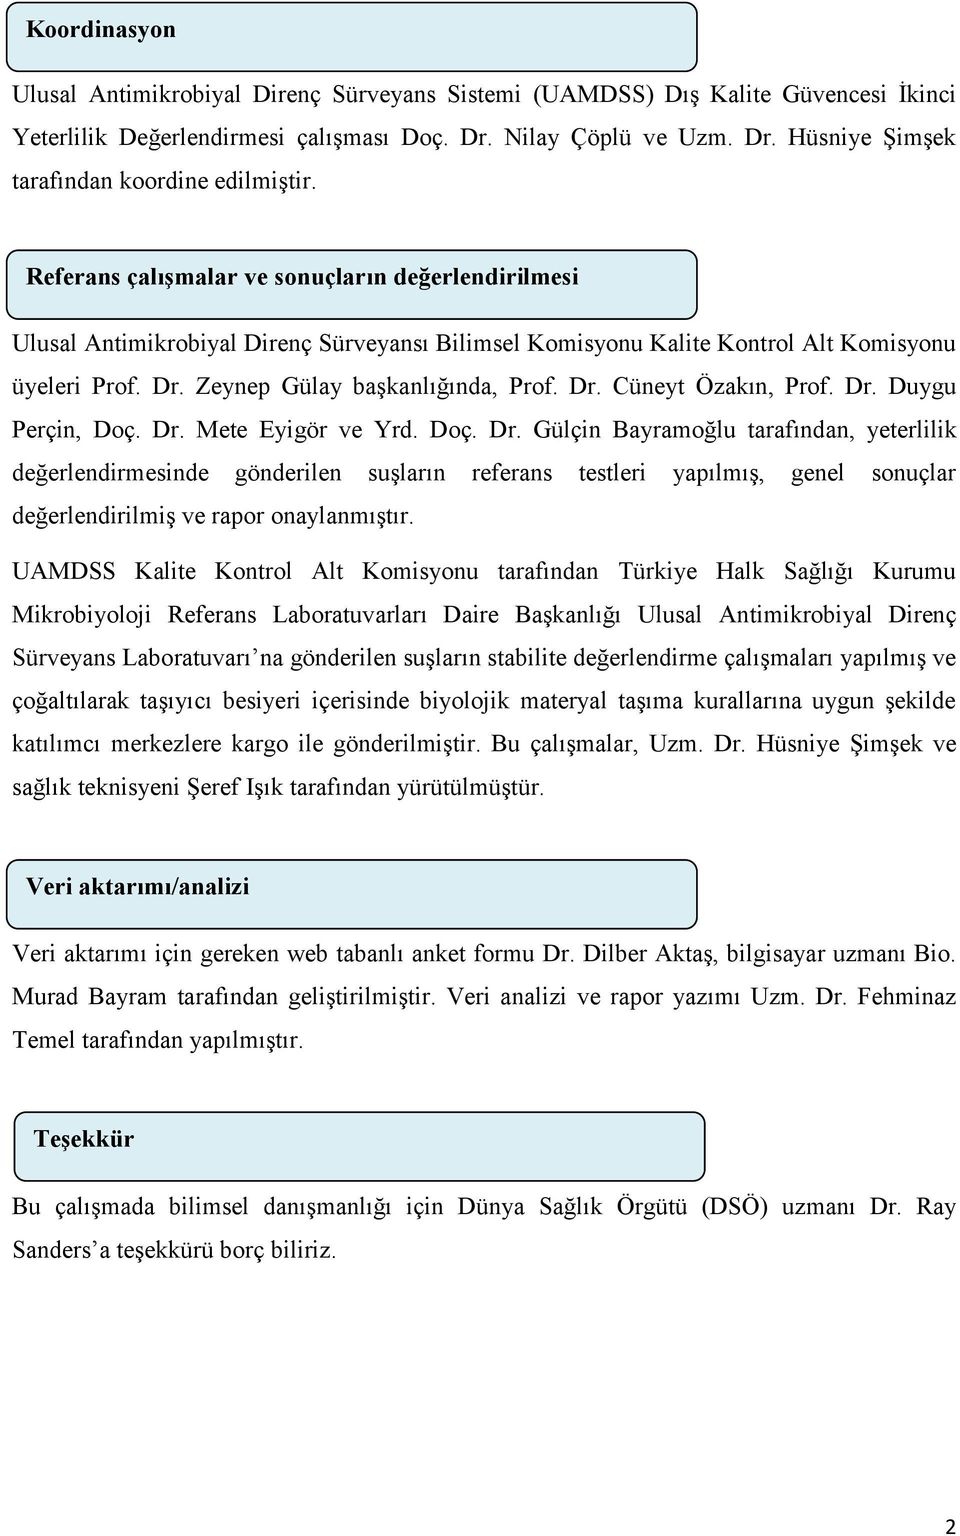 Dr. Duygu Perçin, Doç. Dr. Mete Eyigör ve Yrd. Doç. Dr. Gülçin Bayramoğlu tarafından, yeterlilik değerlendirmesinde gönderilen suşların referans testleri yapılmış, genel sonuçlar değerlendirilmiş ve rapor onaylanmıştır.